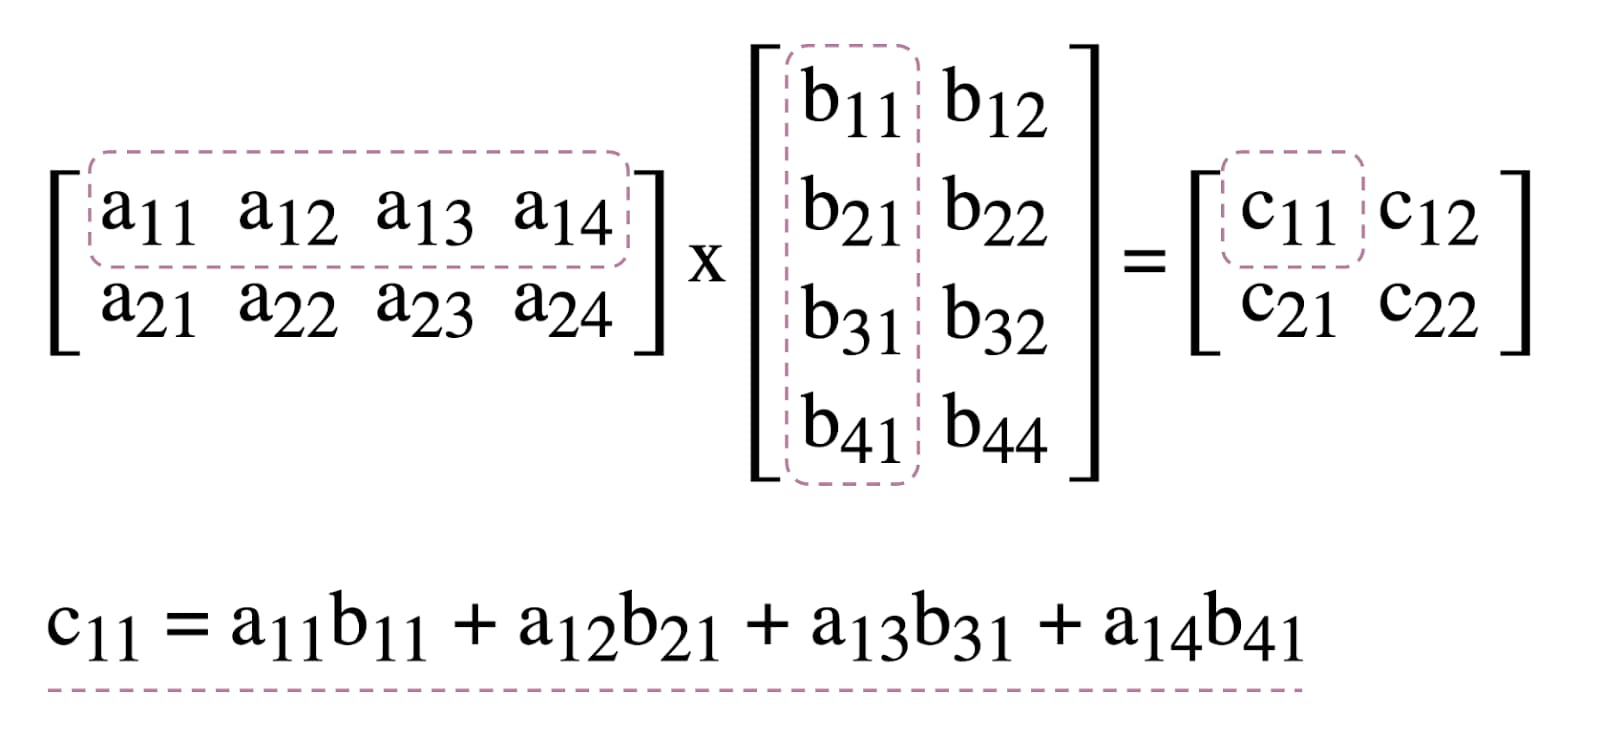 图1. 矩阵乘法图